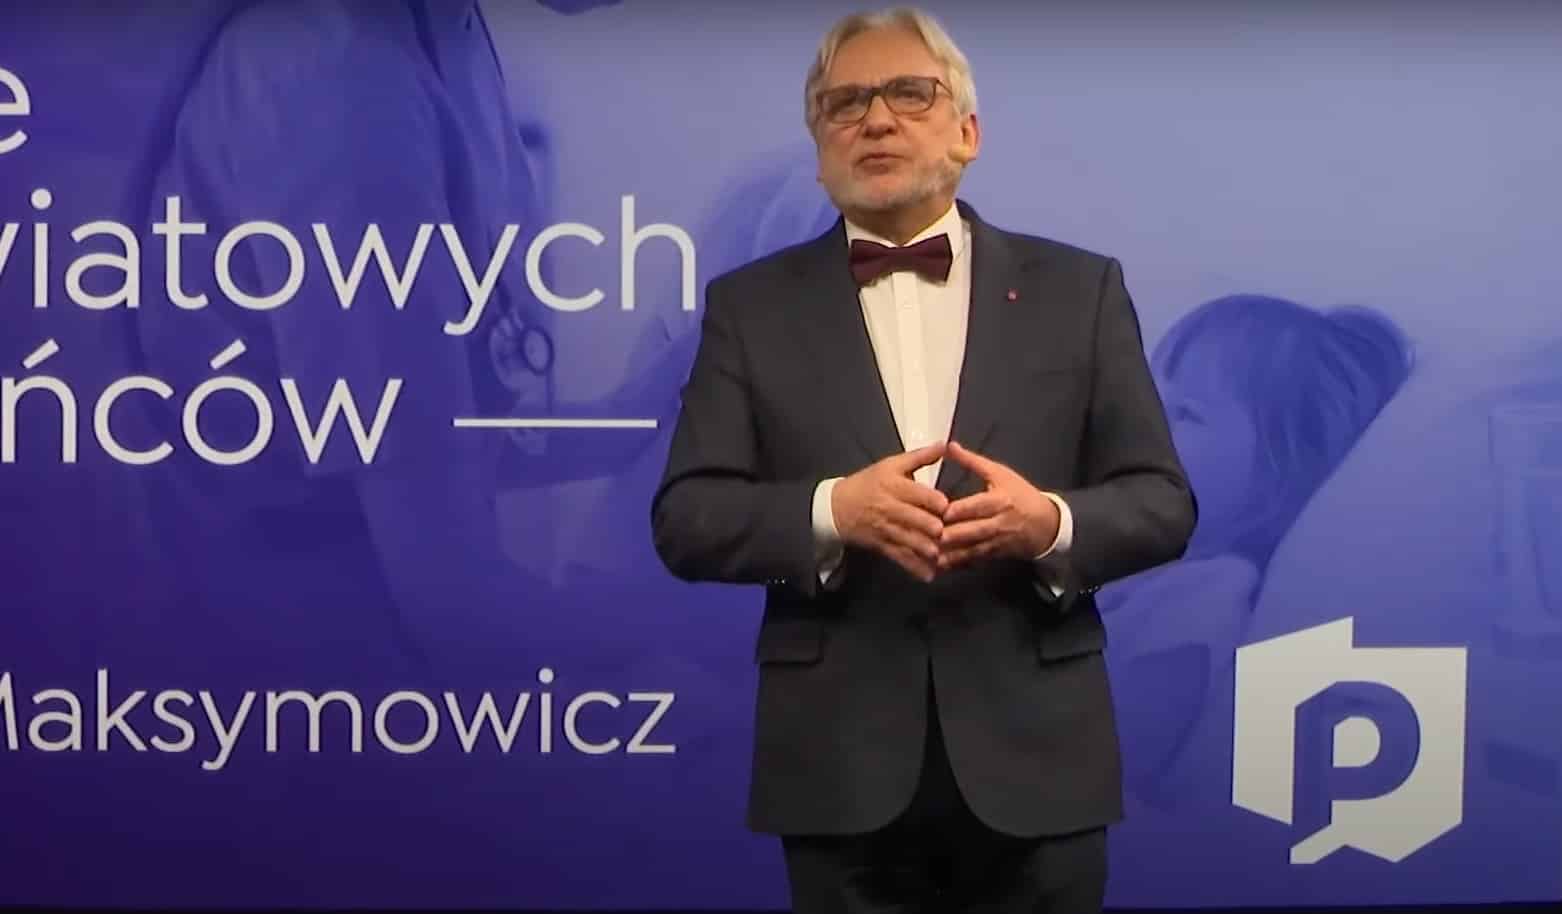 Prof. Maksymowicz przedstawił swoje pomysły na poprawę służby zdrowia Wojciech Maksymowicz Olsztyn, Wiadomości, zShowcase